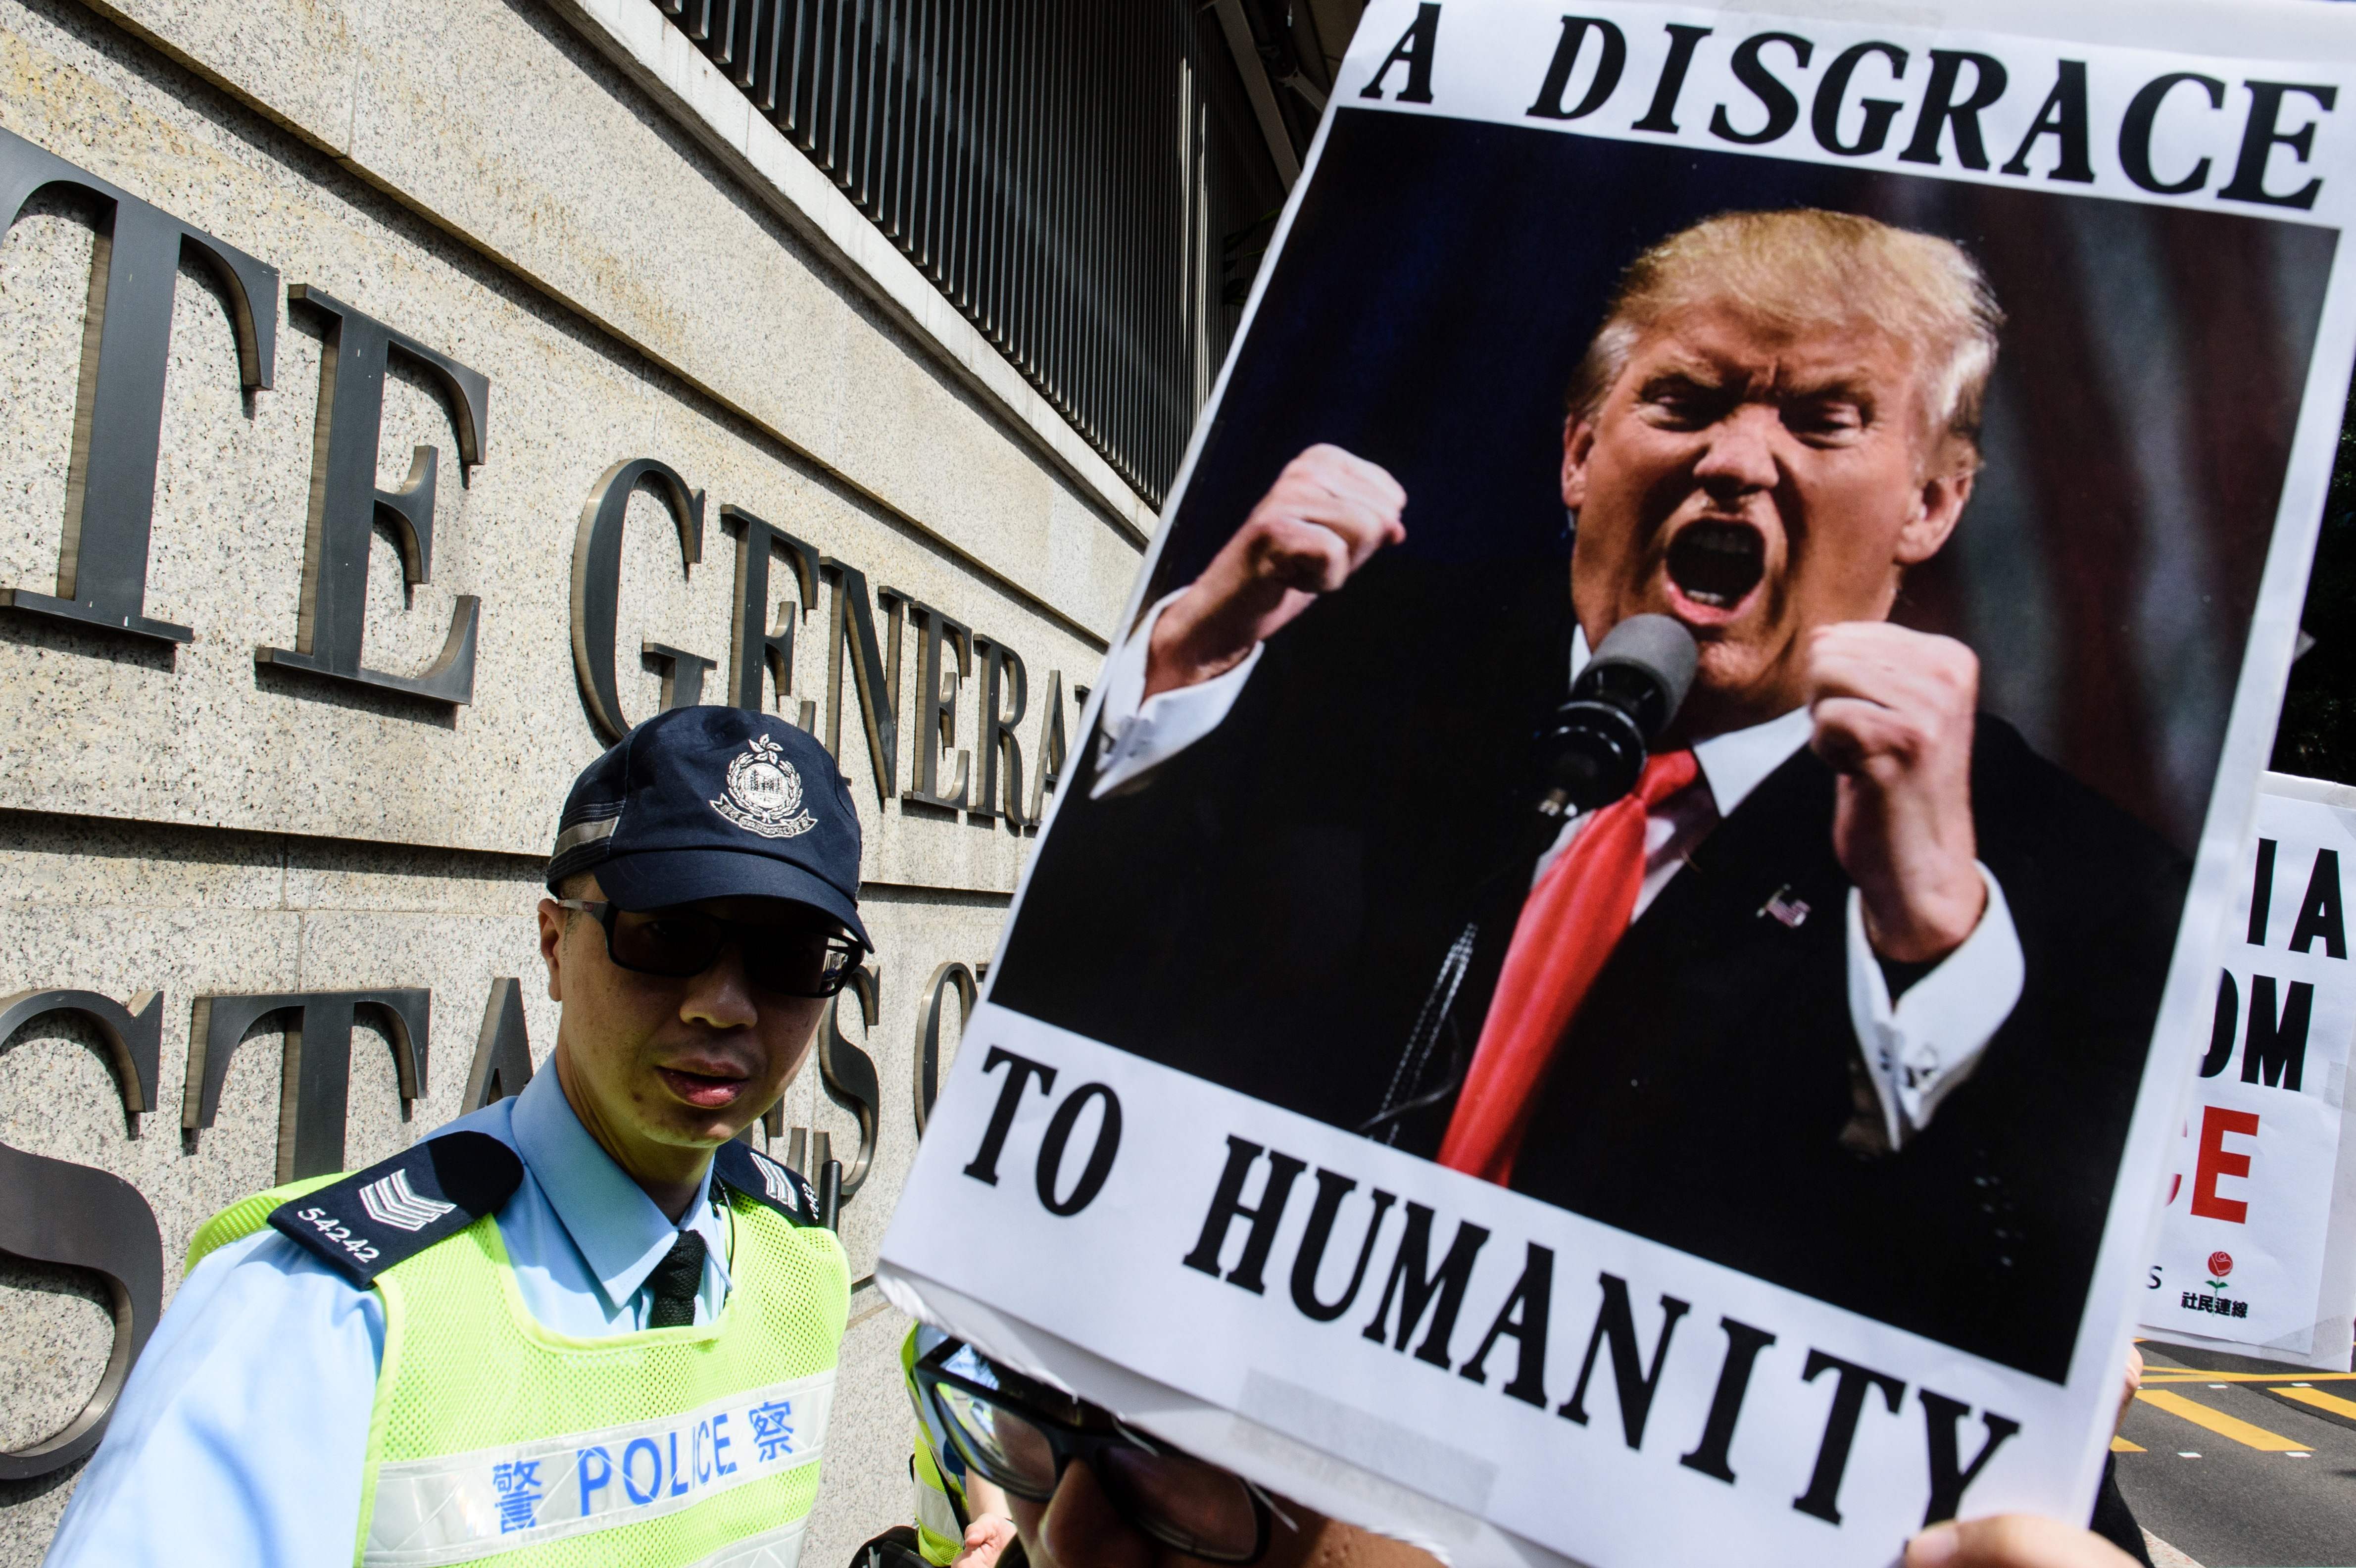 صورة ترامب فى مظاهرات مناهضة لقراراته بحظر سفر مسلمين لأمريكا